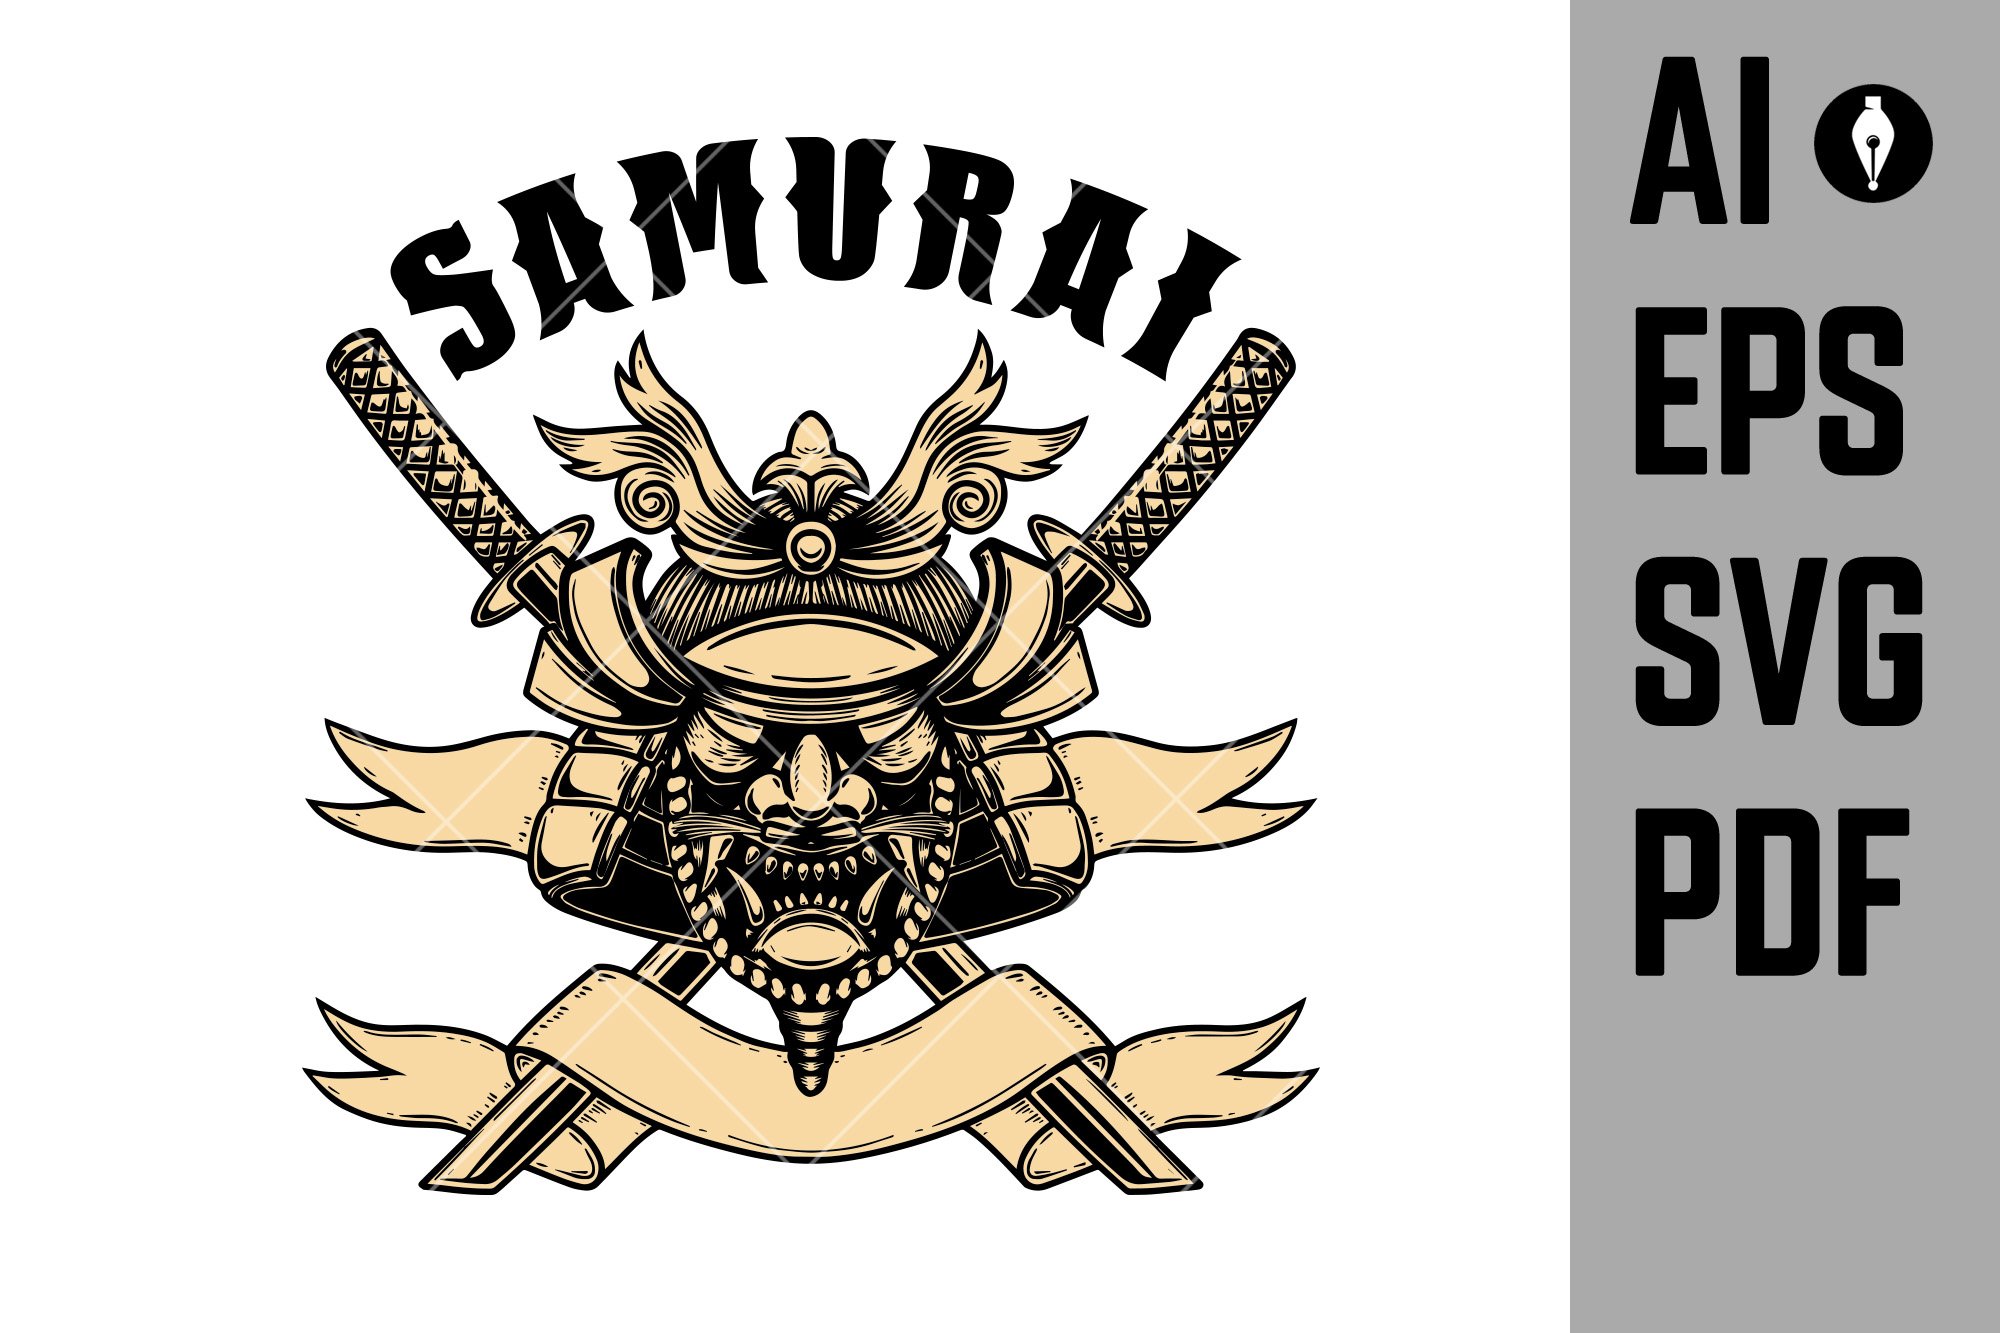 Illustration of helmet of samurai cover image.